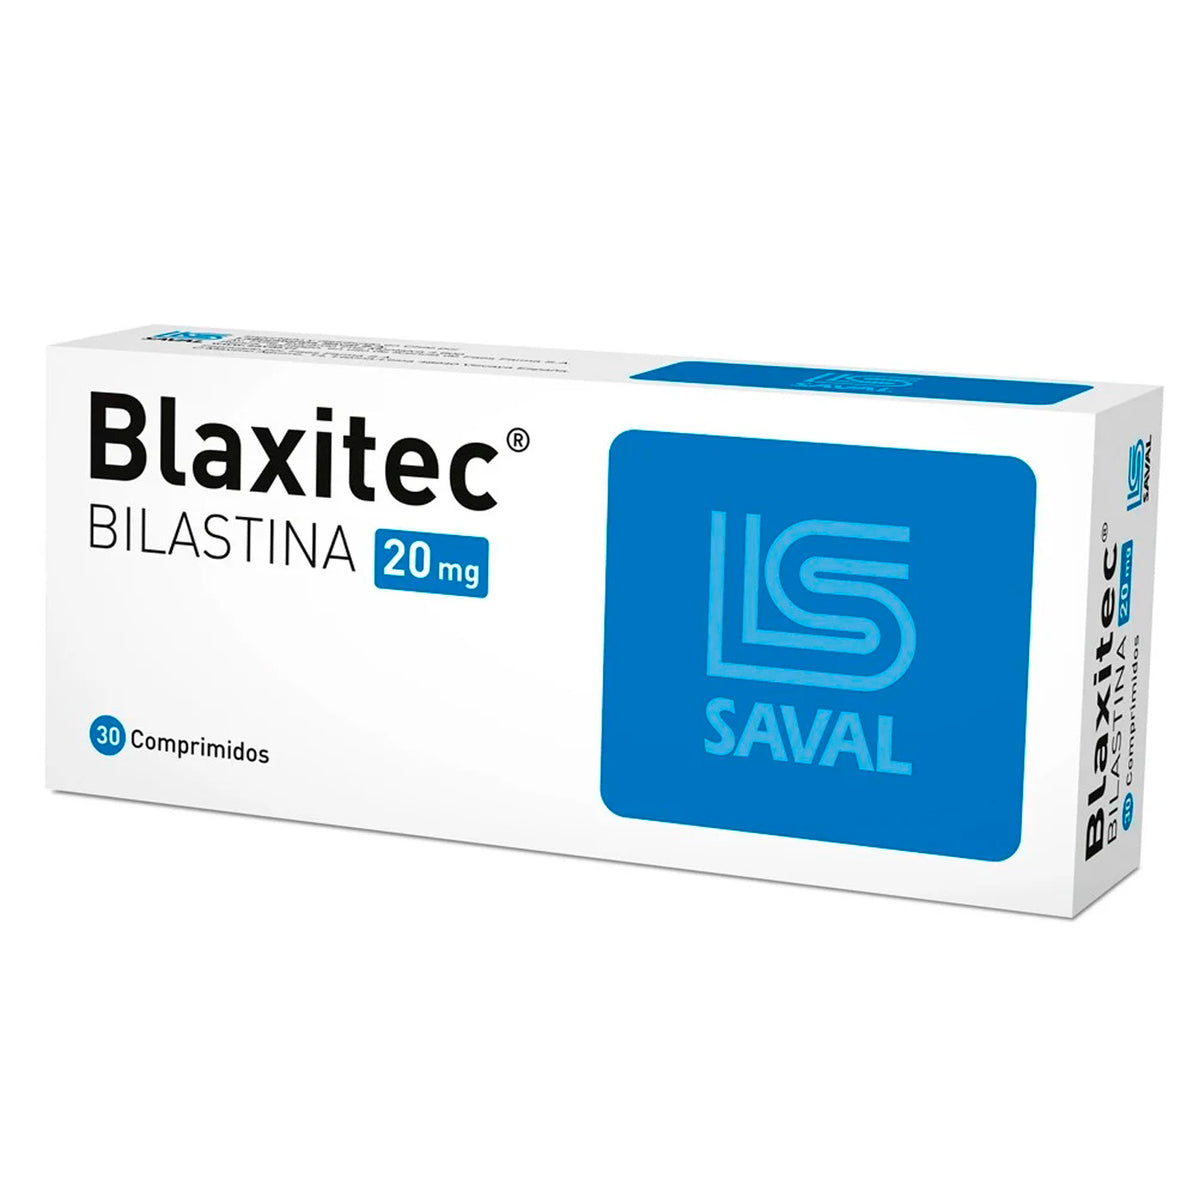 Blaxitec Comprimidos 20mg